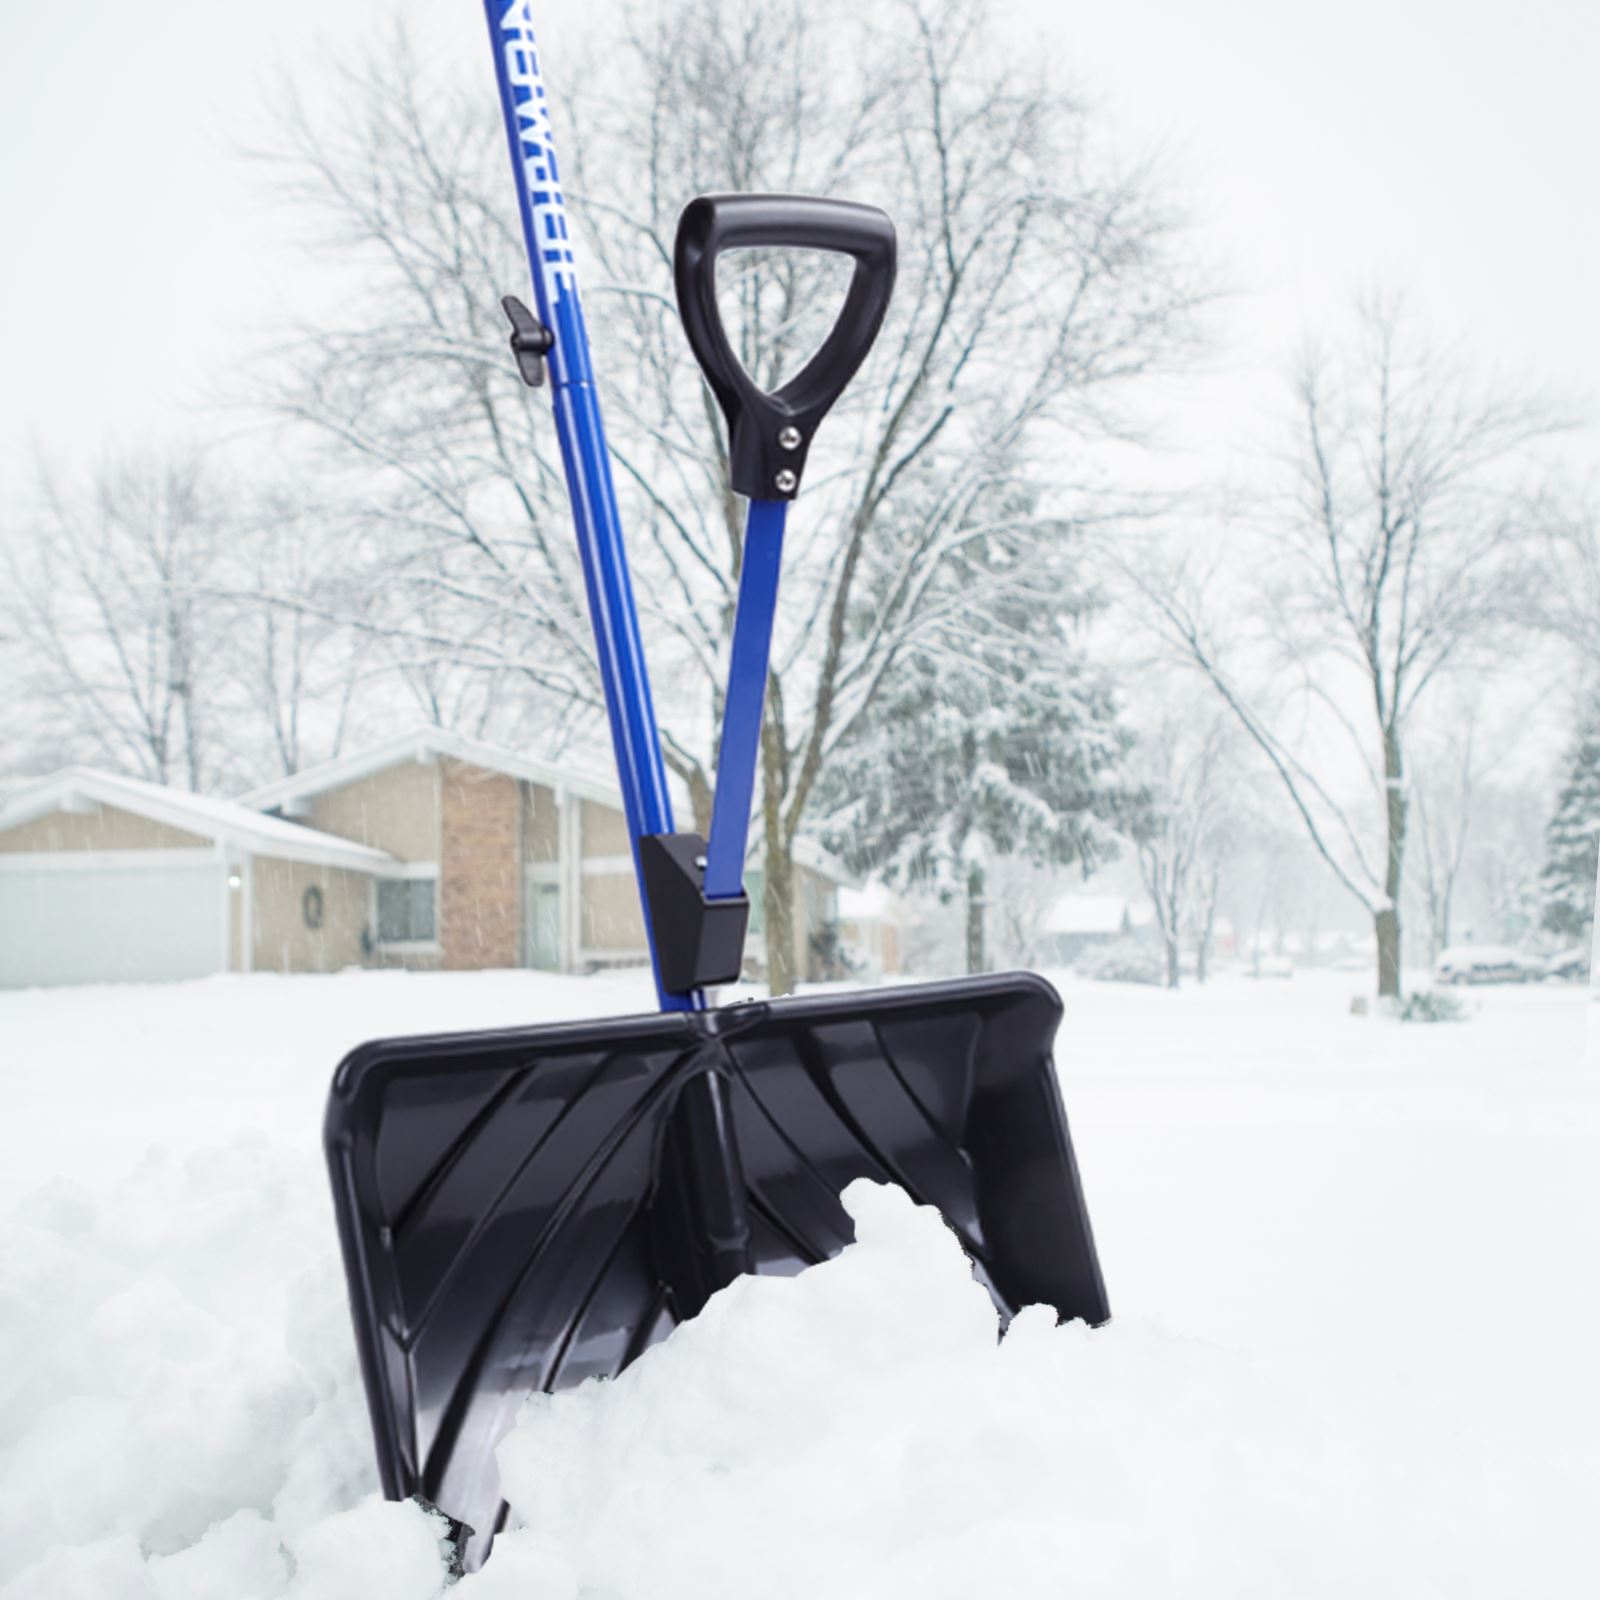 Details about   Snow Joe Shovelution Snow Shovel w/ Spring Assist Handle     BA2 